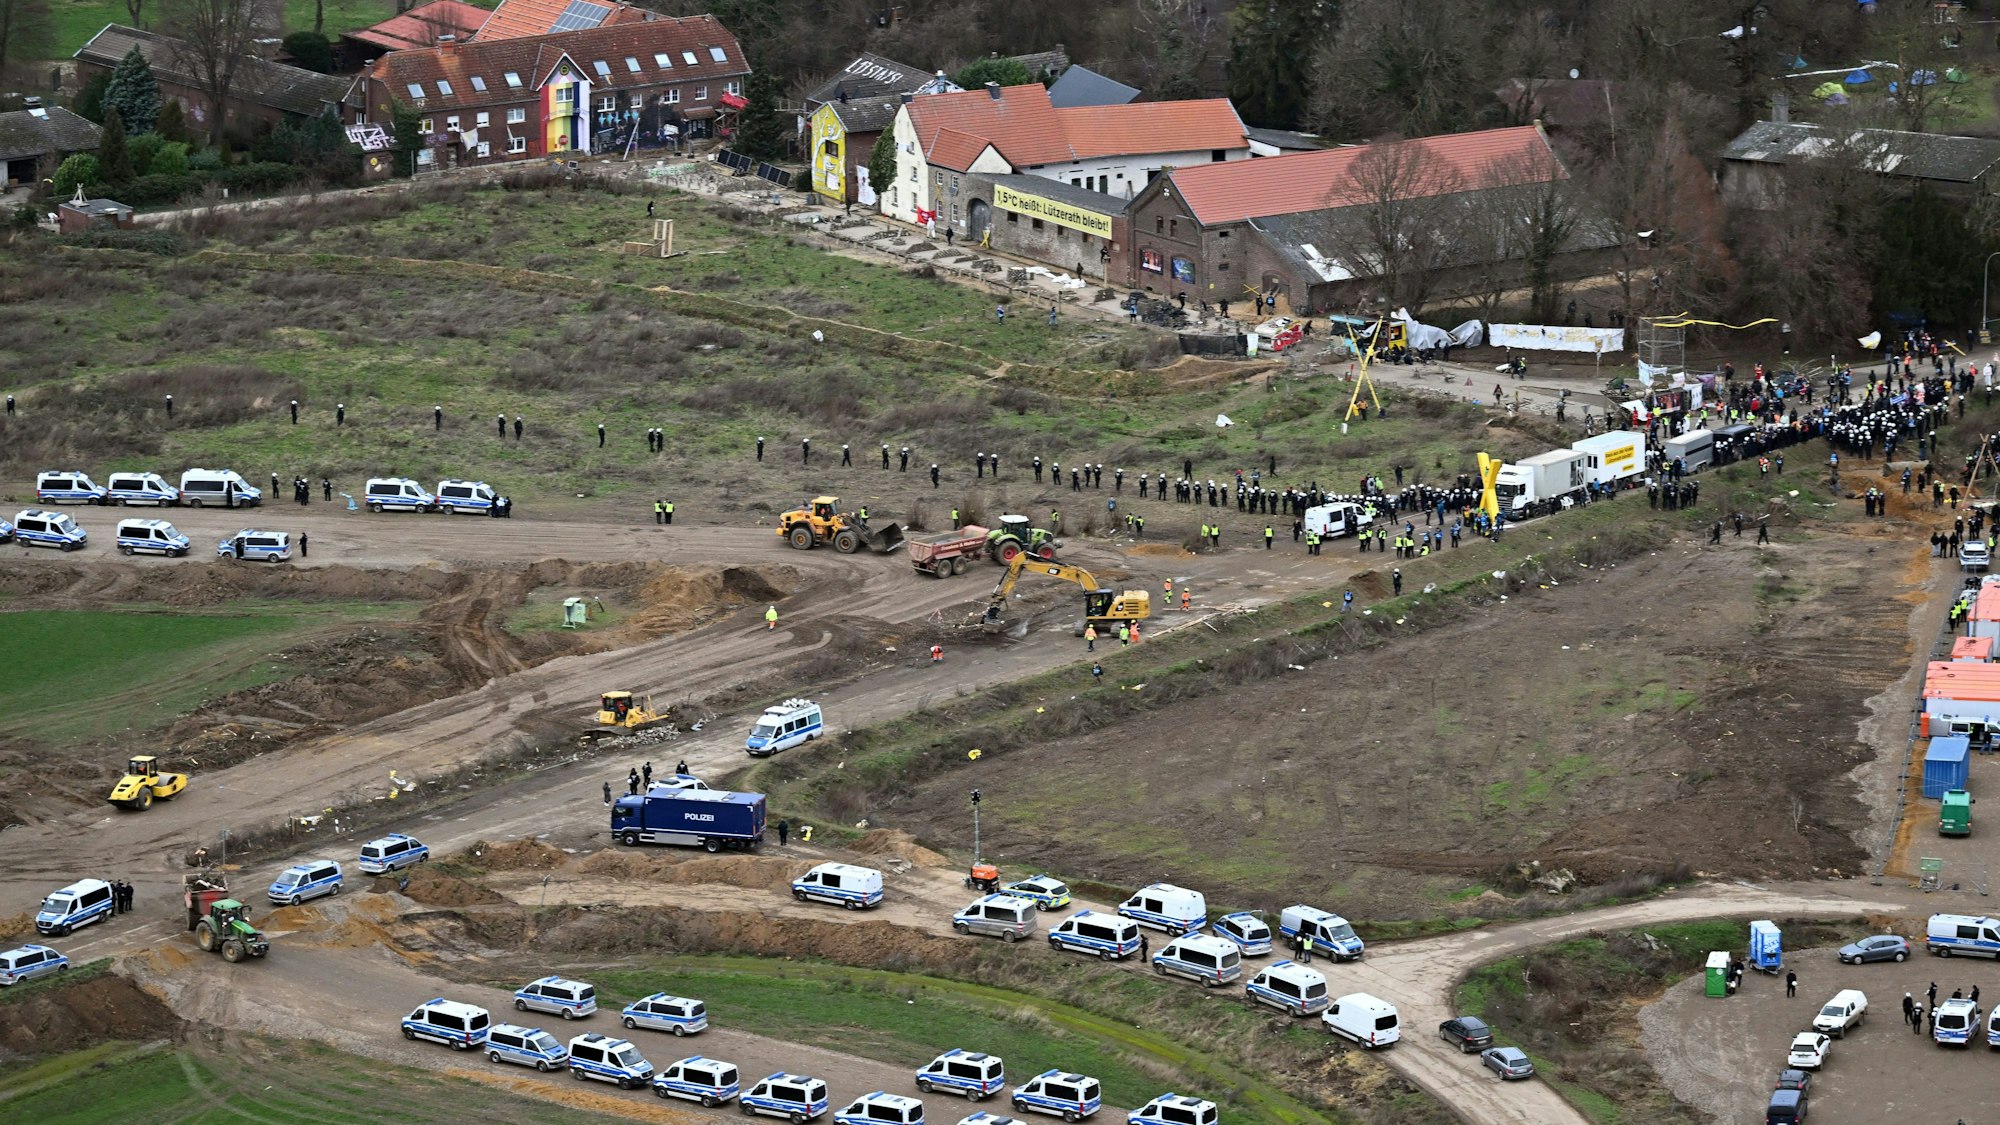 Polizeiautos und Polizisten stehen vor der Ortschaft Lützerath - eine Luftaufnahme zeigt die Szenerie. Lützerath soll zur Erweiterung des Braunkohletagebaus Garzweiler II abgebaggert werden.